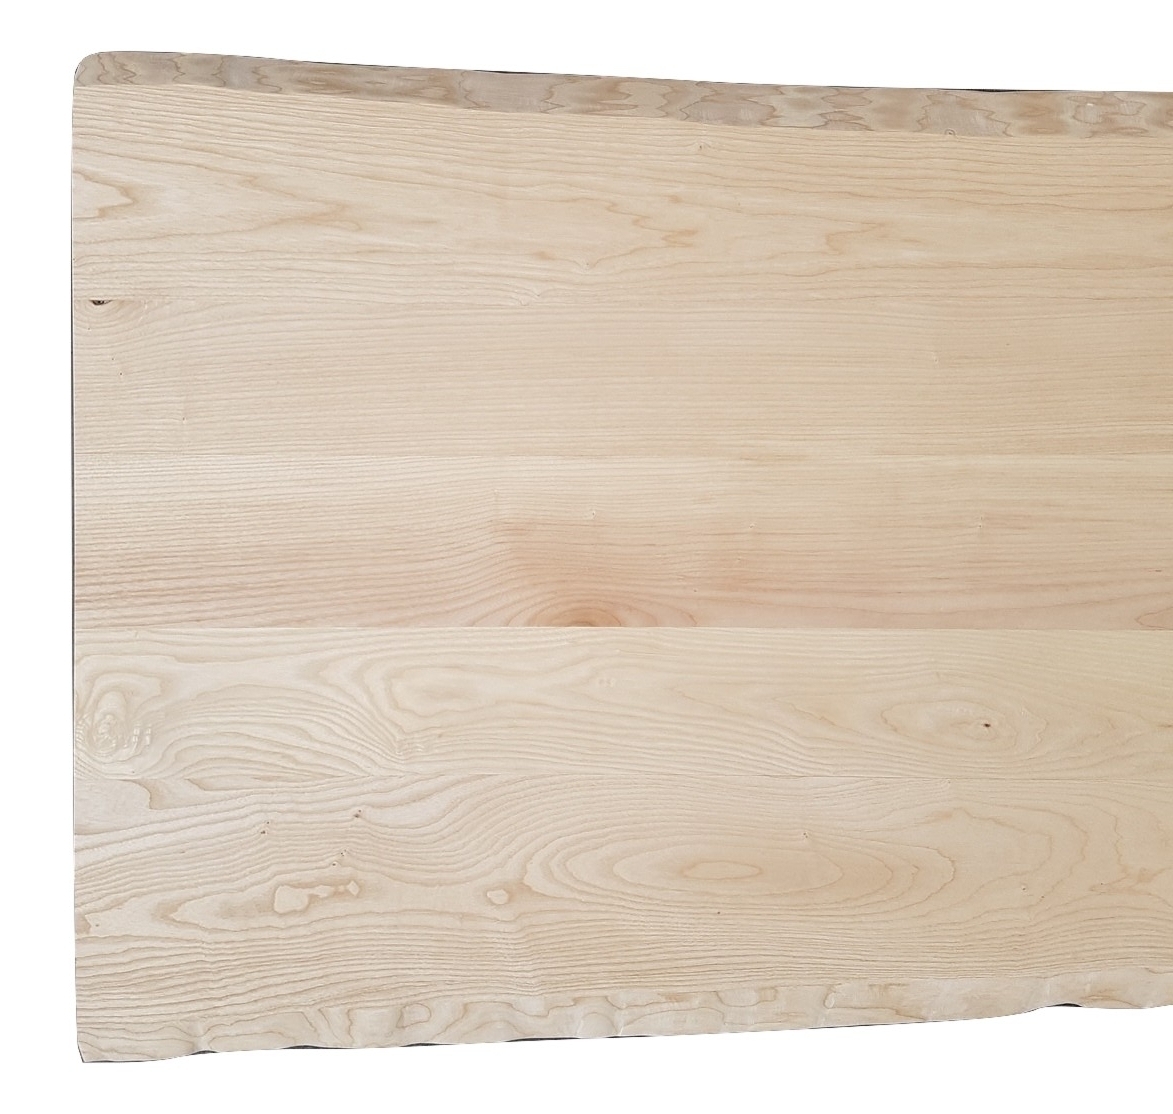 Piano tavolo in legno massello / Piano scrivania in legno / Esclusivo legno  di frassino naturale, oliato / Taglio pulito / Disponibile in diverse  dimensioni e colori -  Italia